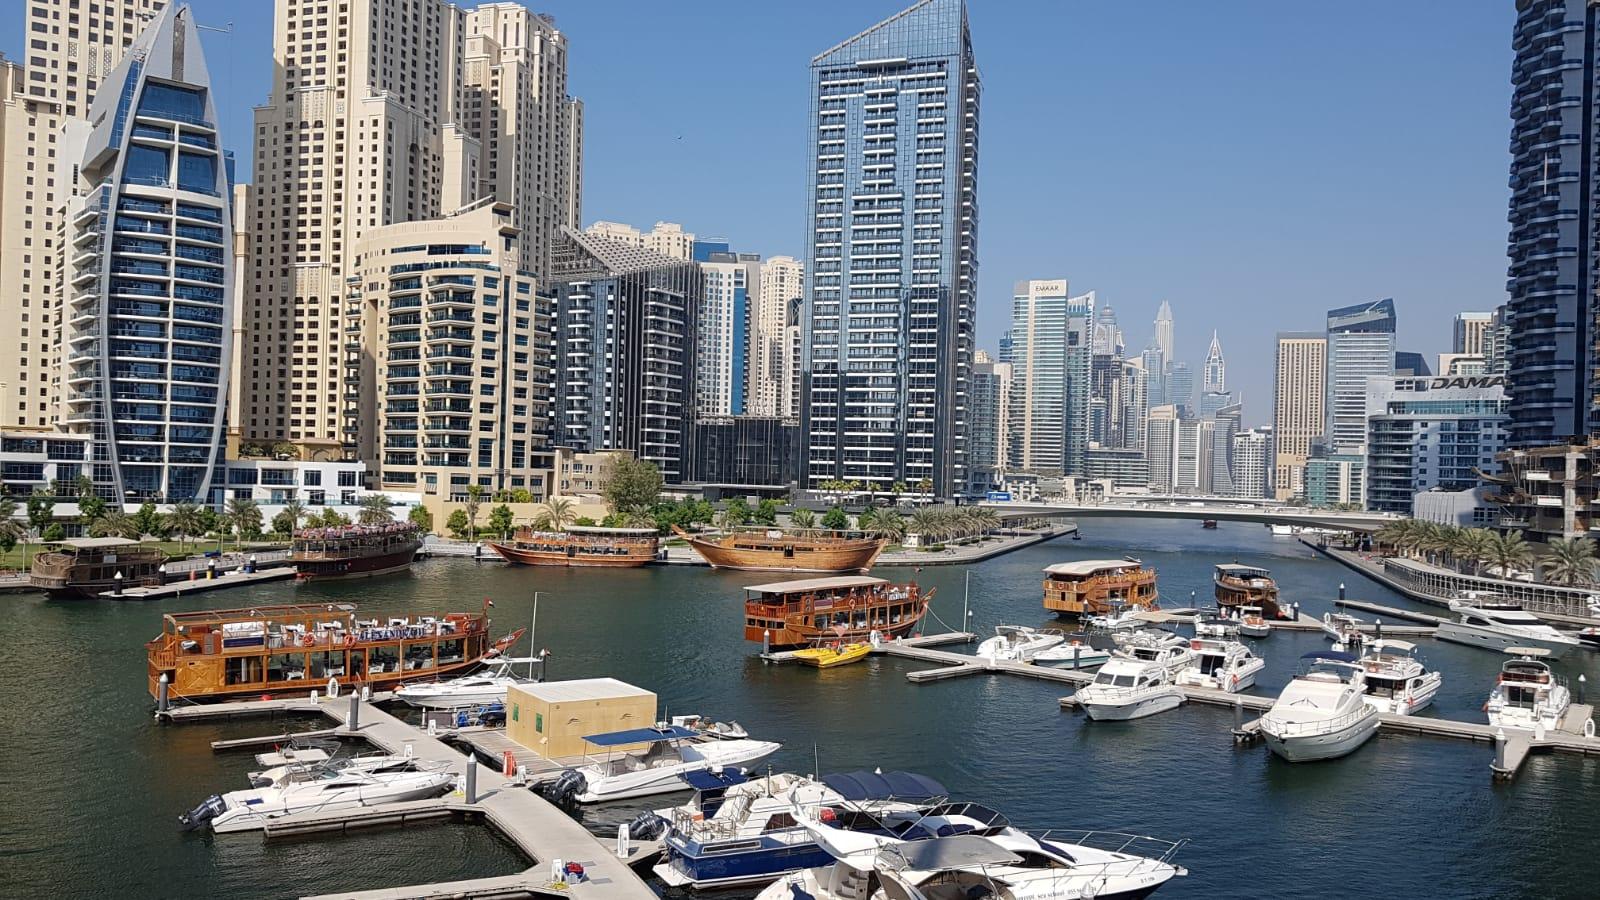 Famous places of Dubai